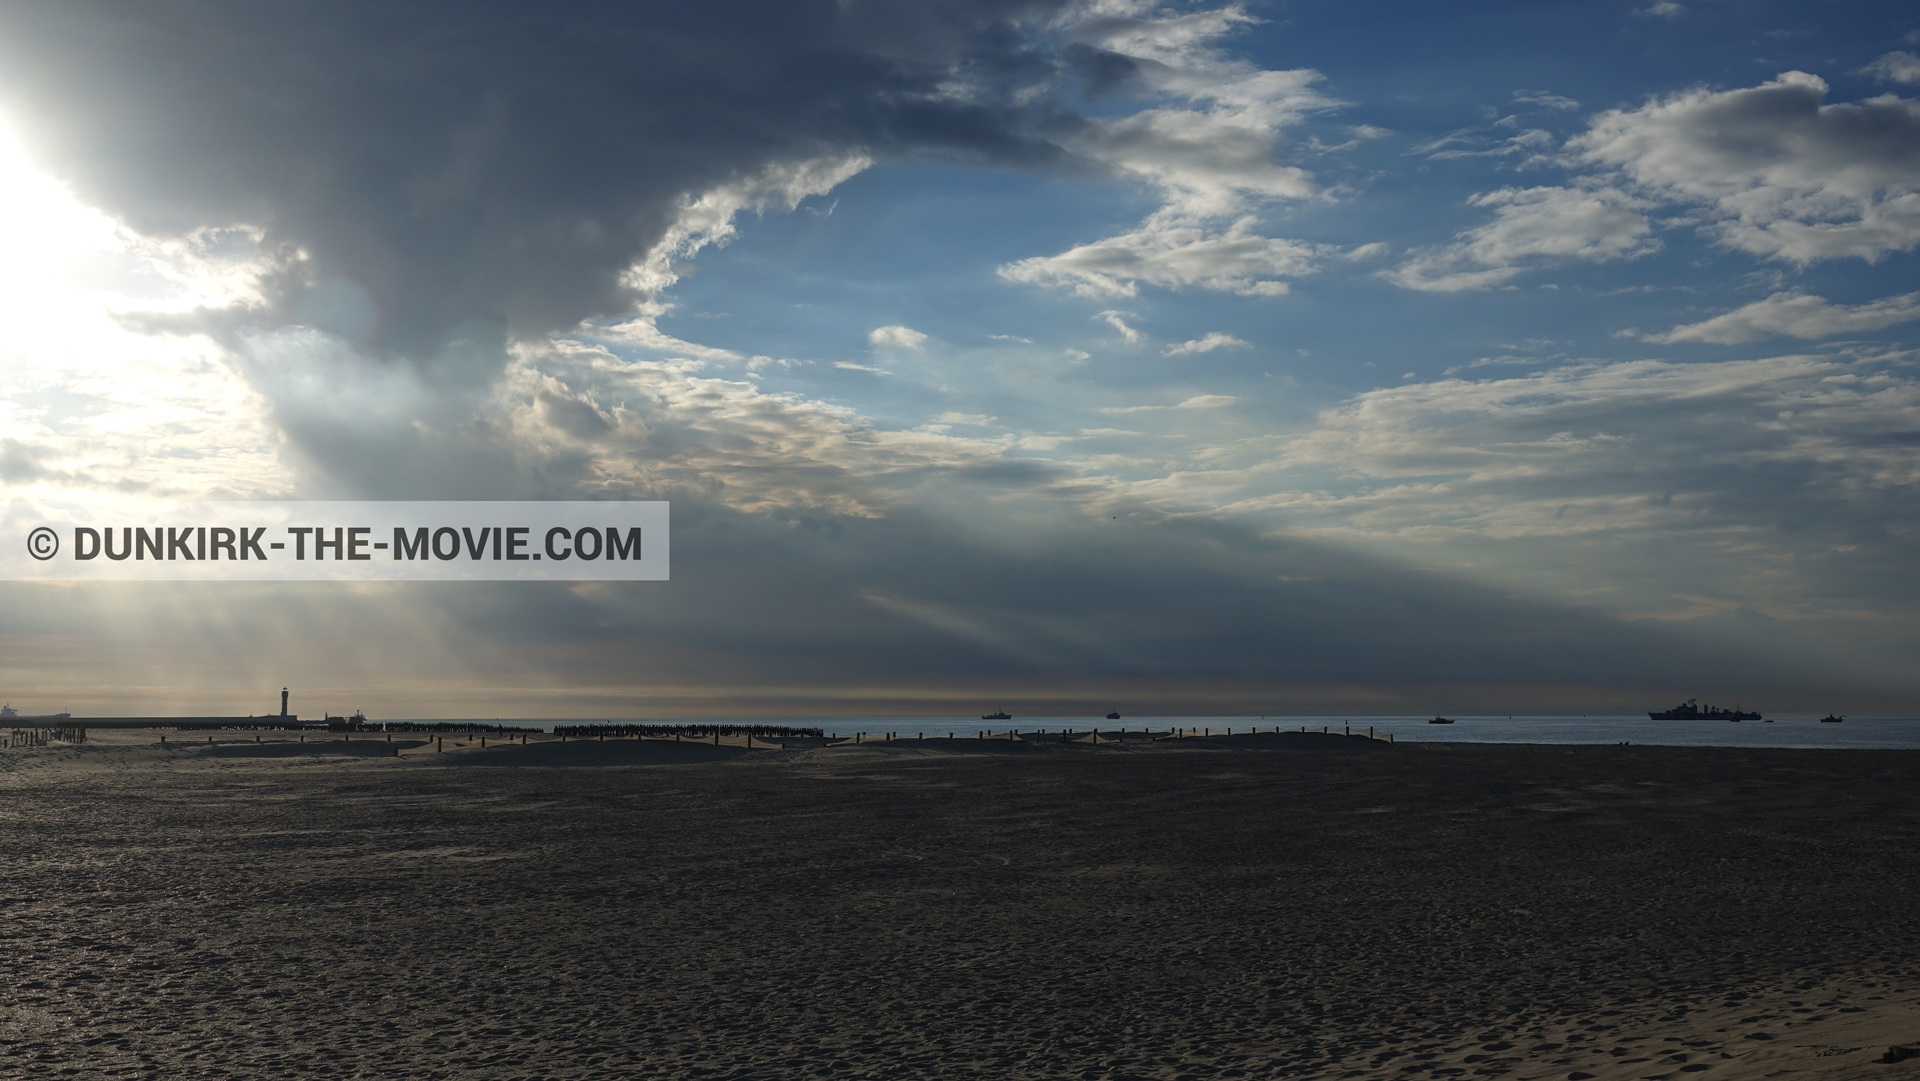 Fotos con barco, cielo nublado, faro de Saint-Pol-sur-Mer, playa,  durante el rodaje de la película Dunkerque de Nolan